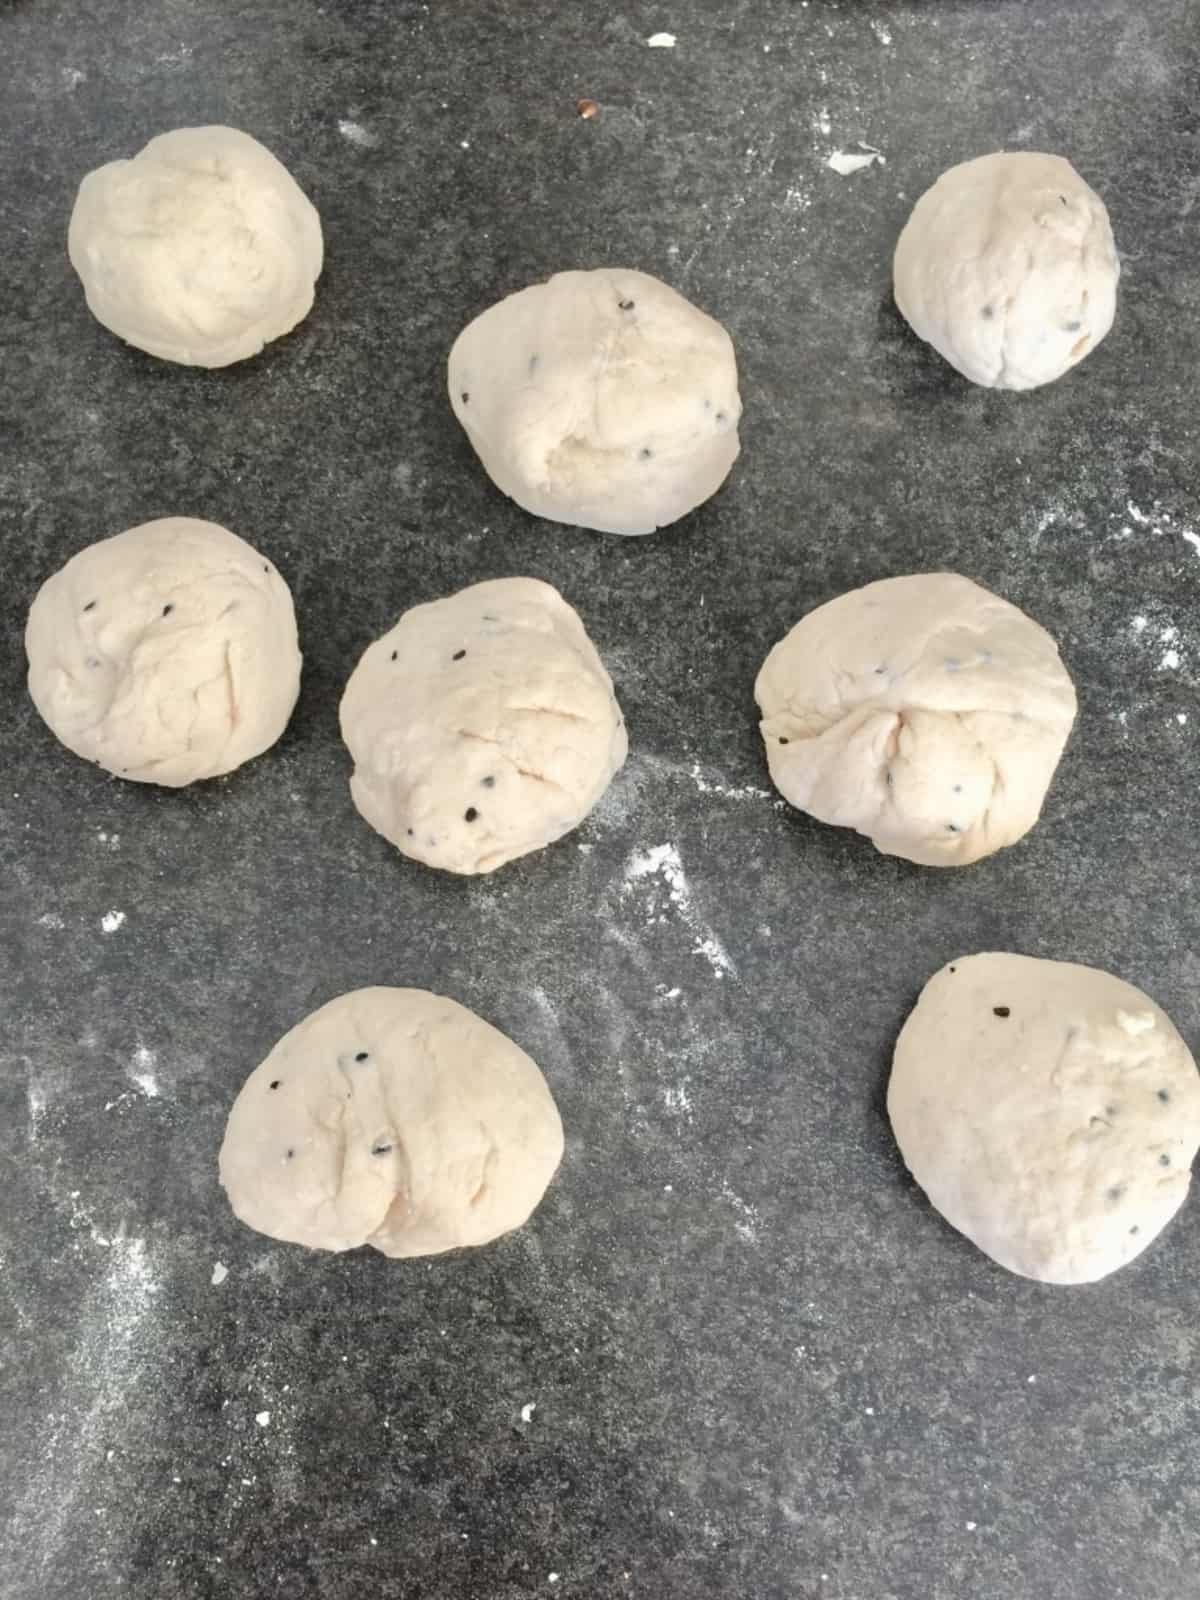 8 dough balls on the counter.